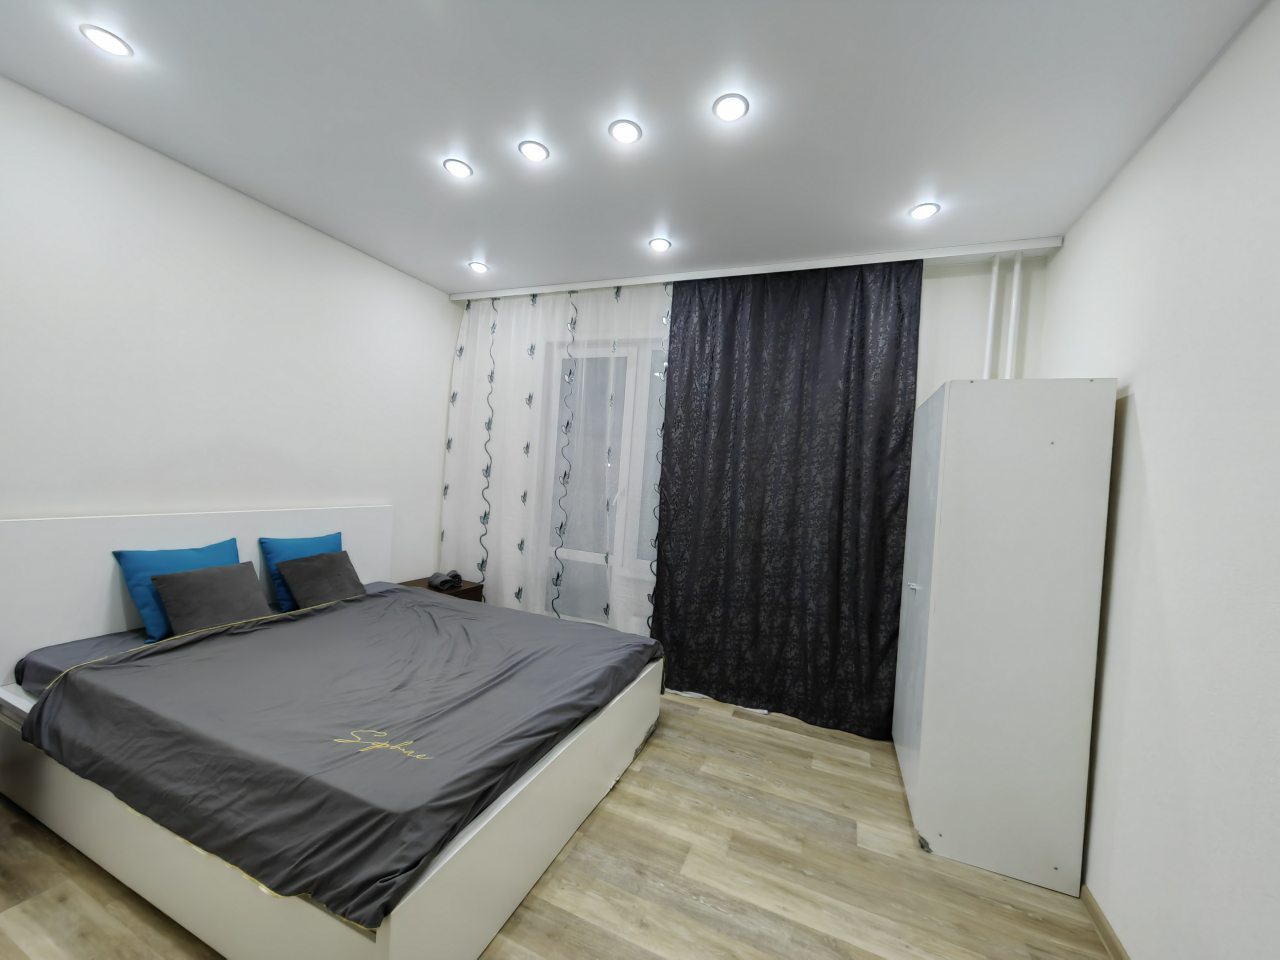 Трёхместный и более (Апартаменты) апартамента уютные с евро ремонтом, Новосибирск